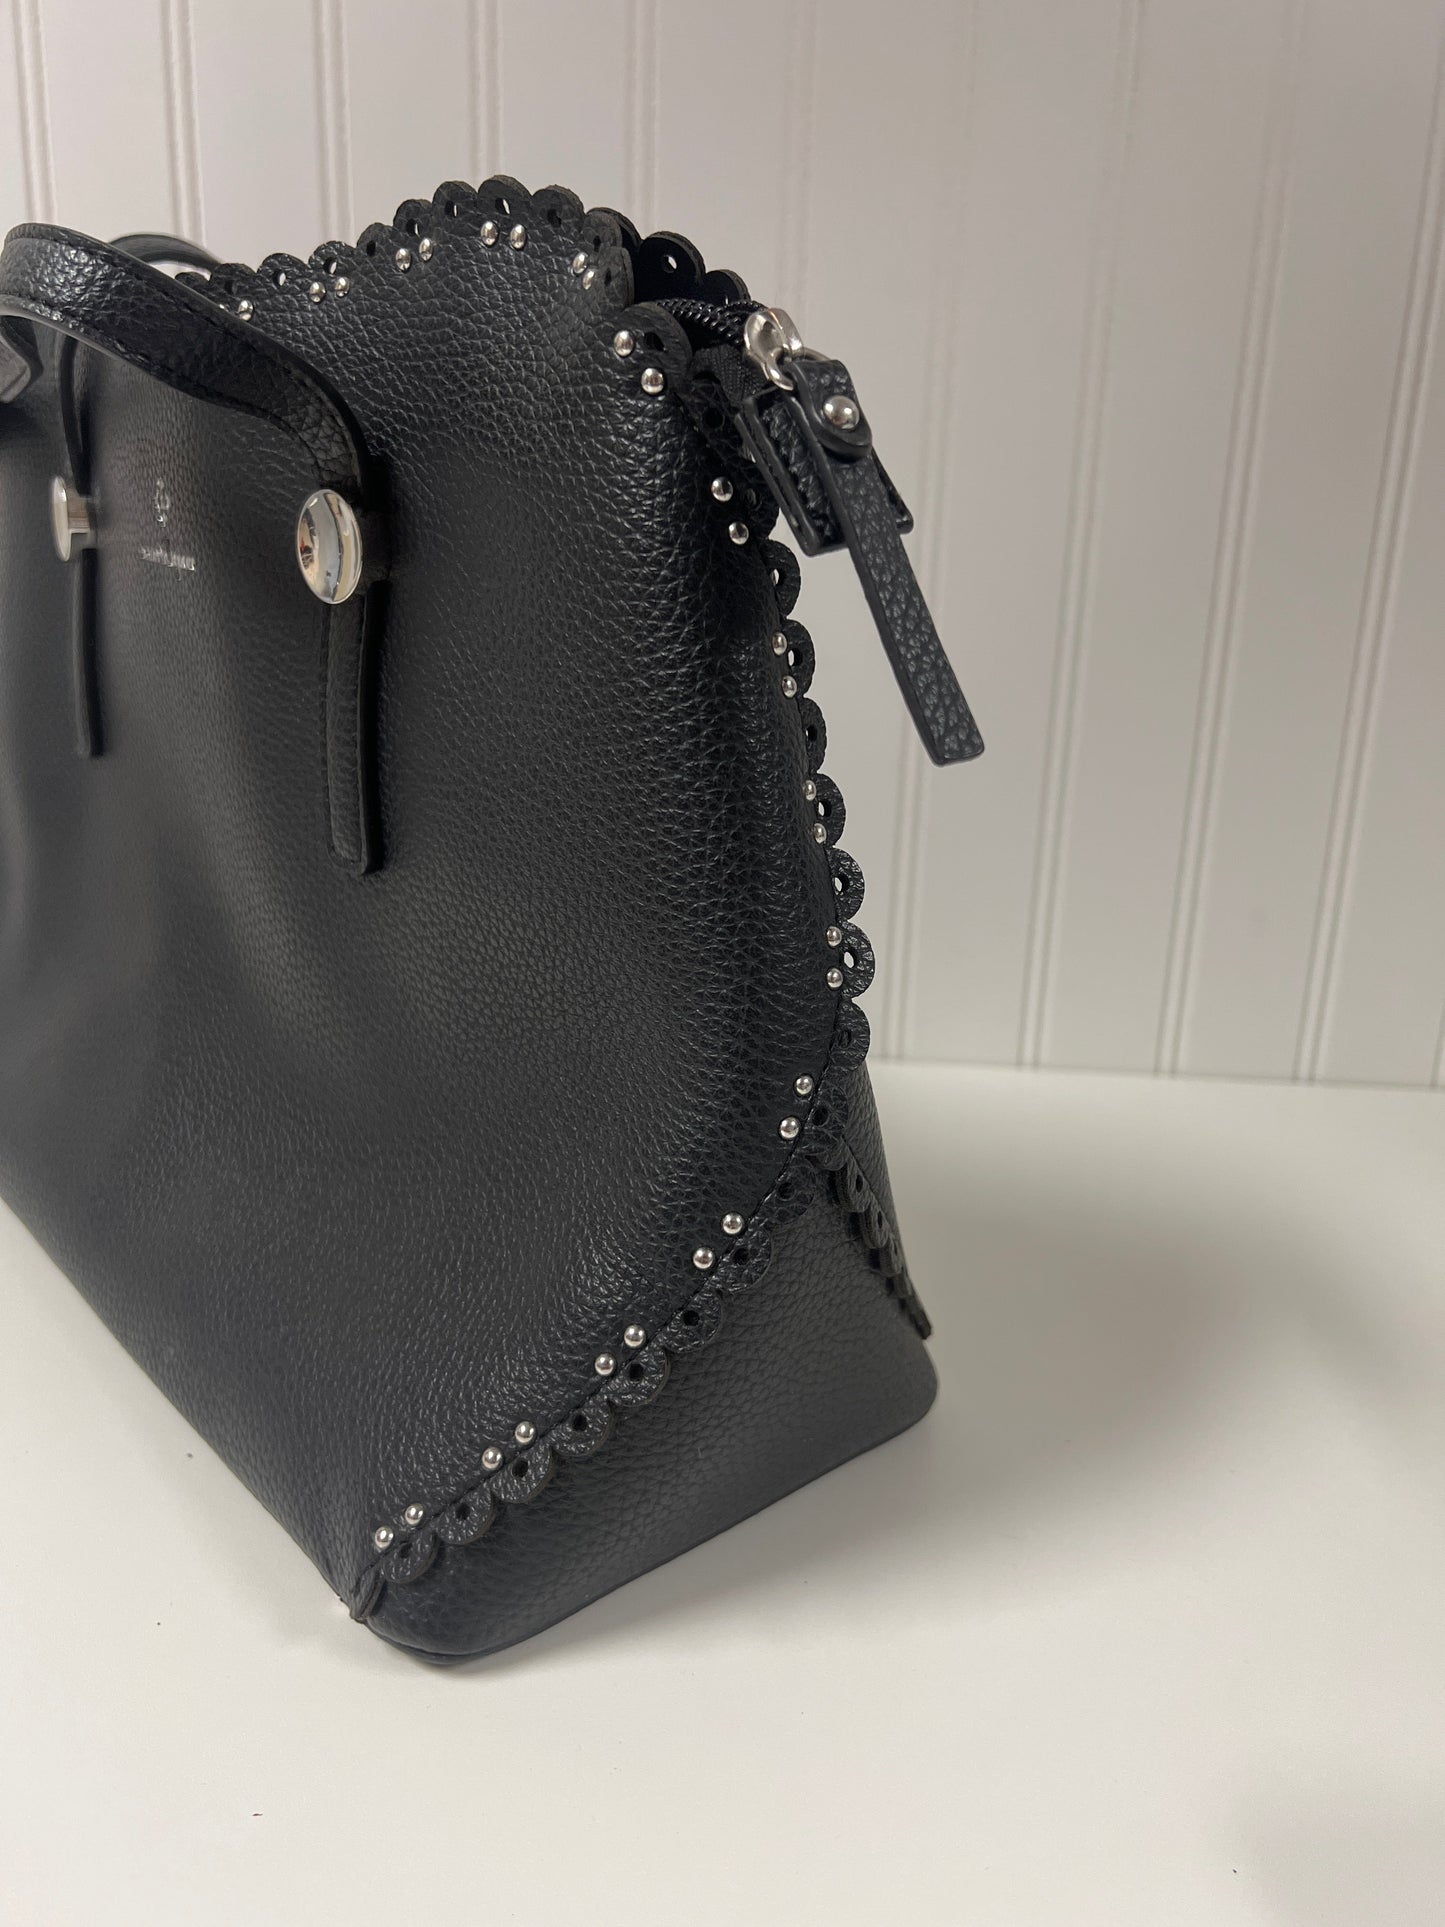 Handbag Designer Nanette Lepore, Size Large